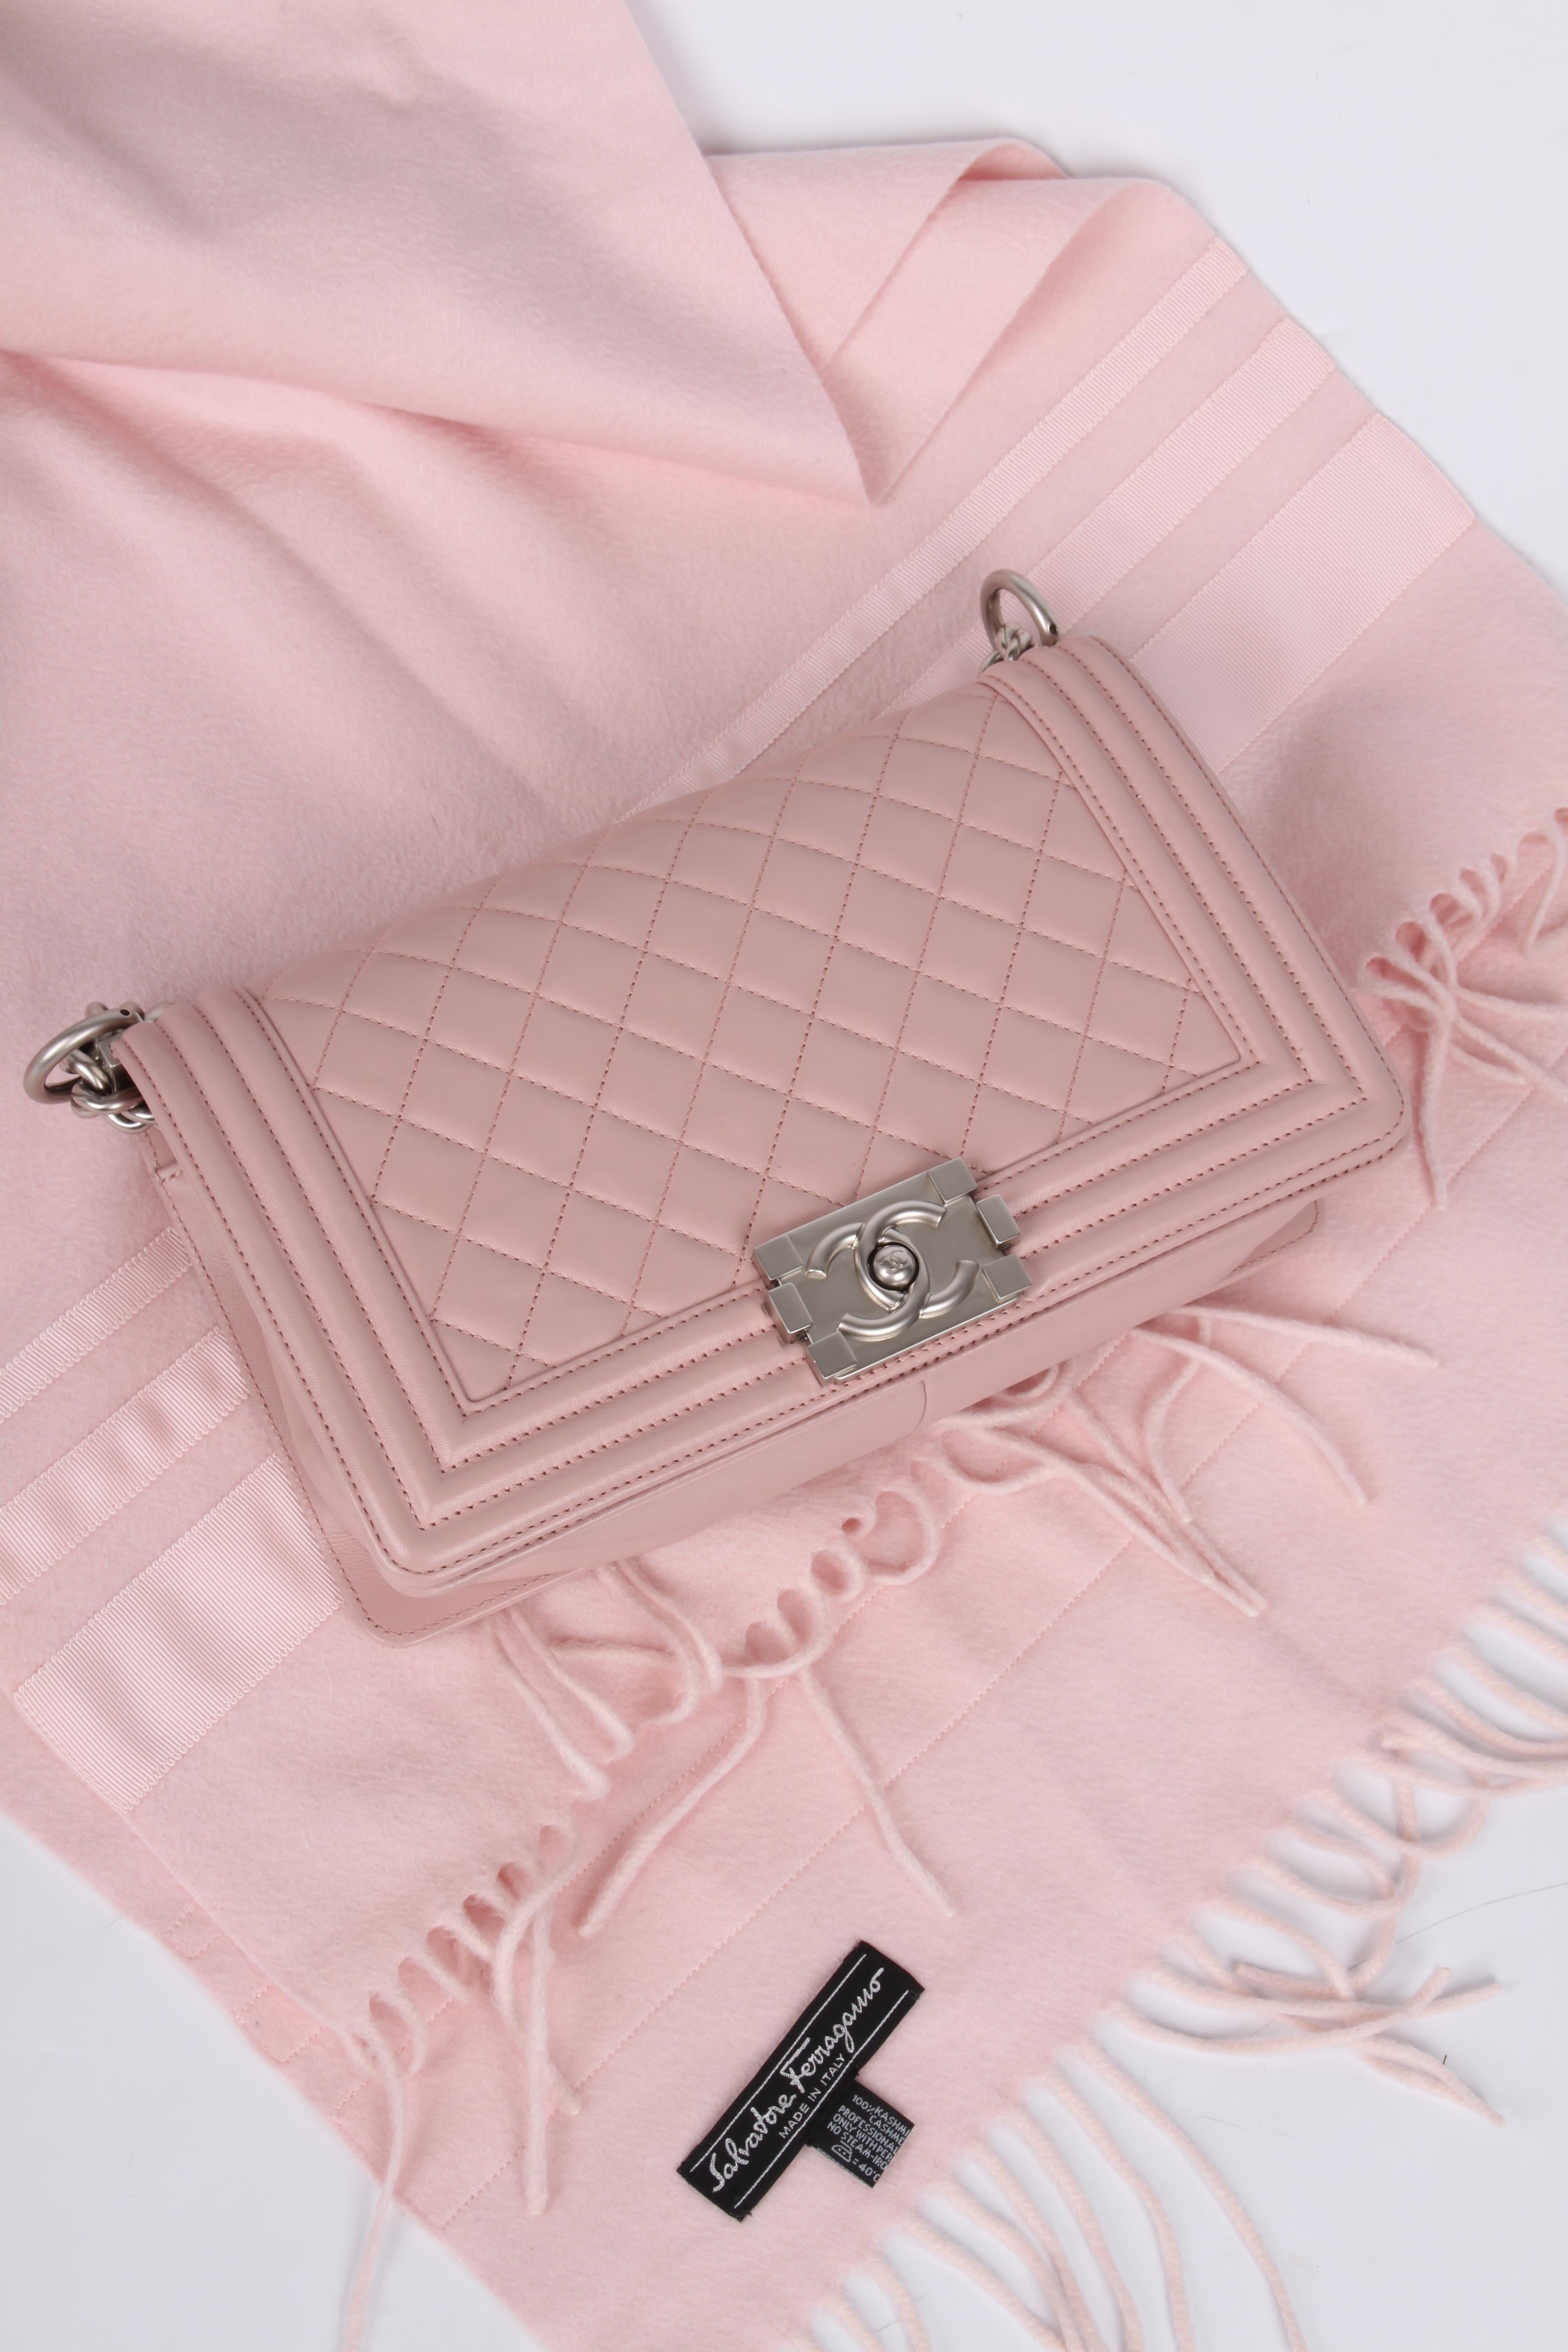 Chanel Le Boy Bag Medium - dusty pale pink 3